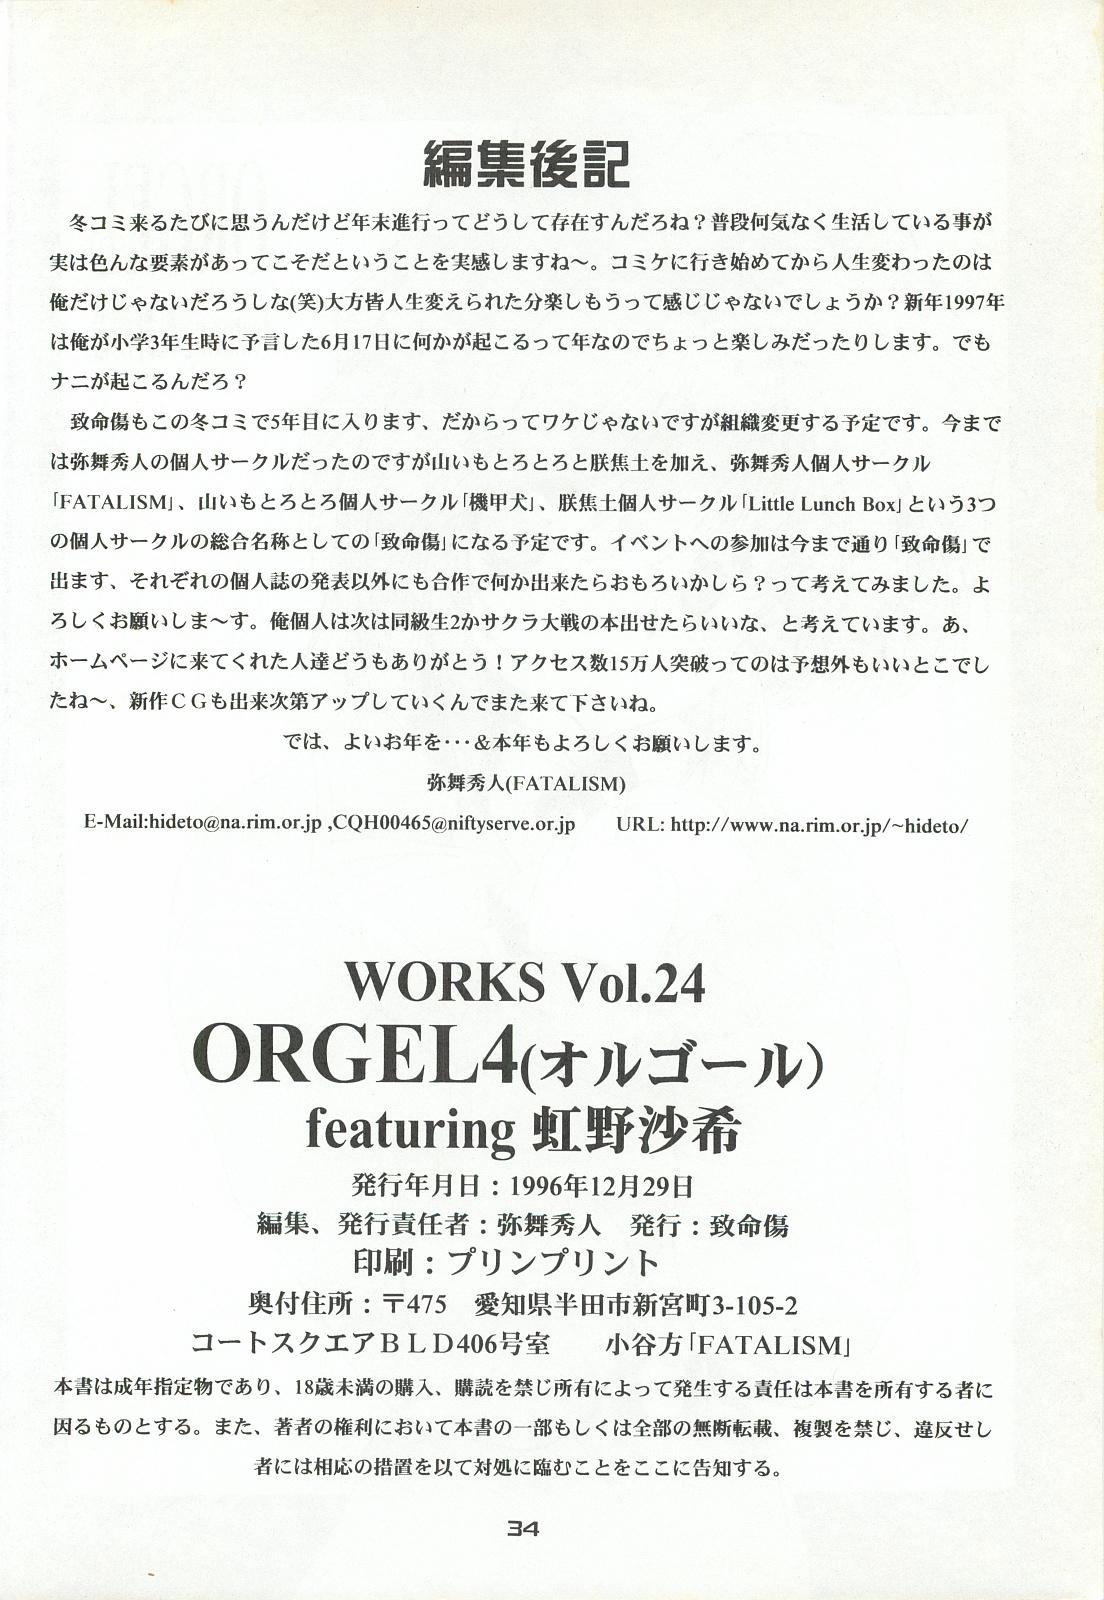 ORGEL 4 featuring Nijino Saki 32